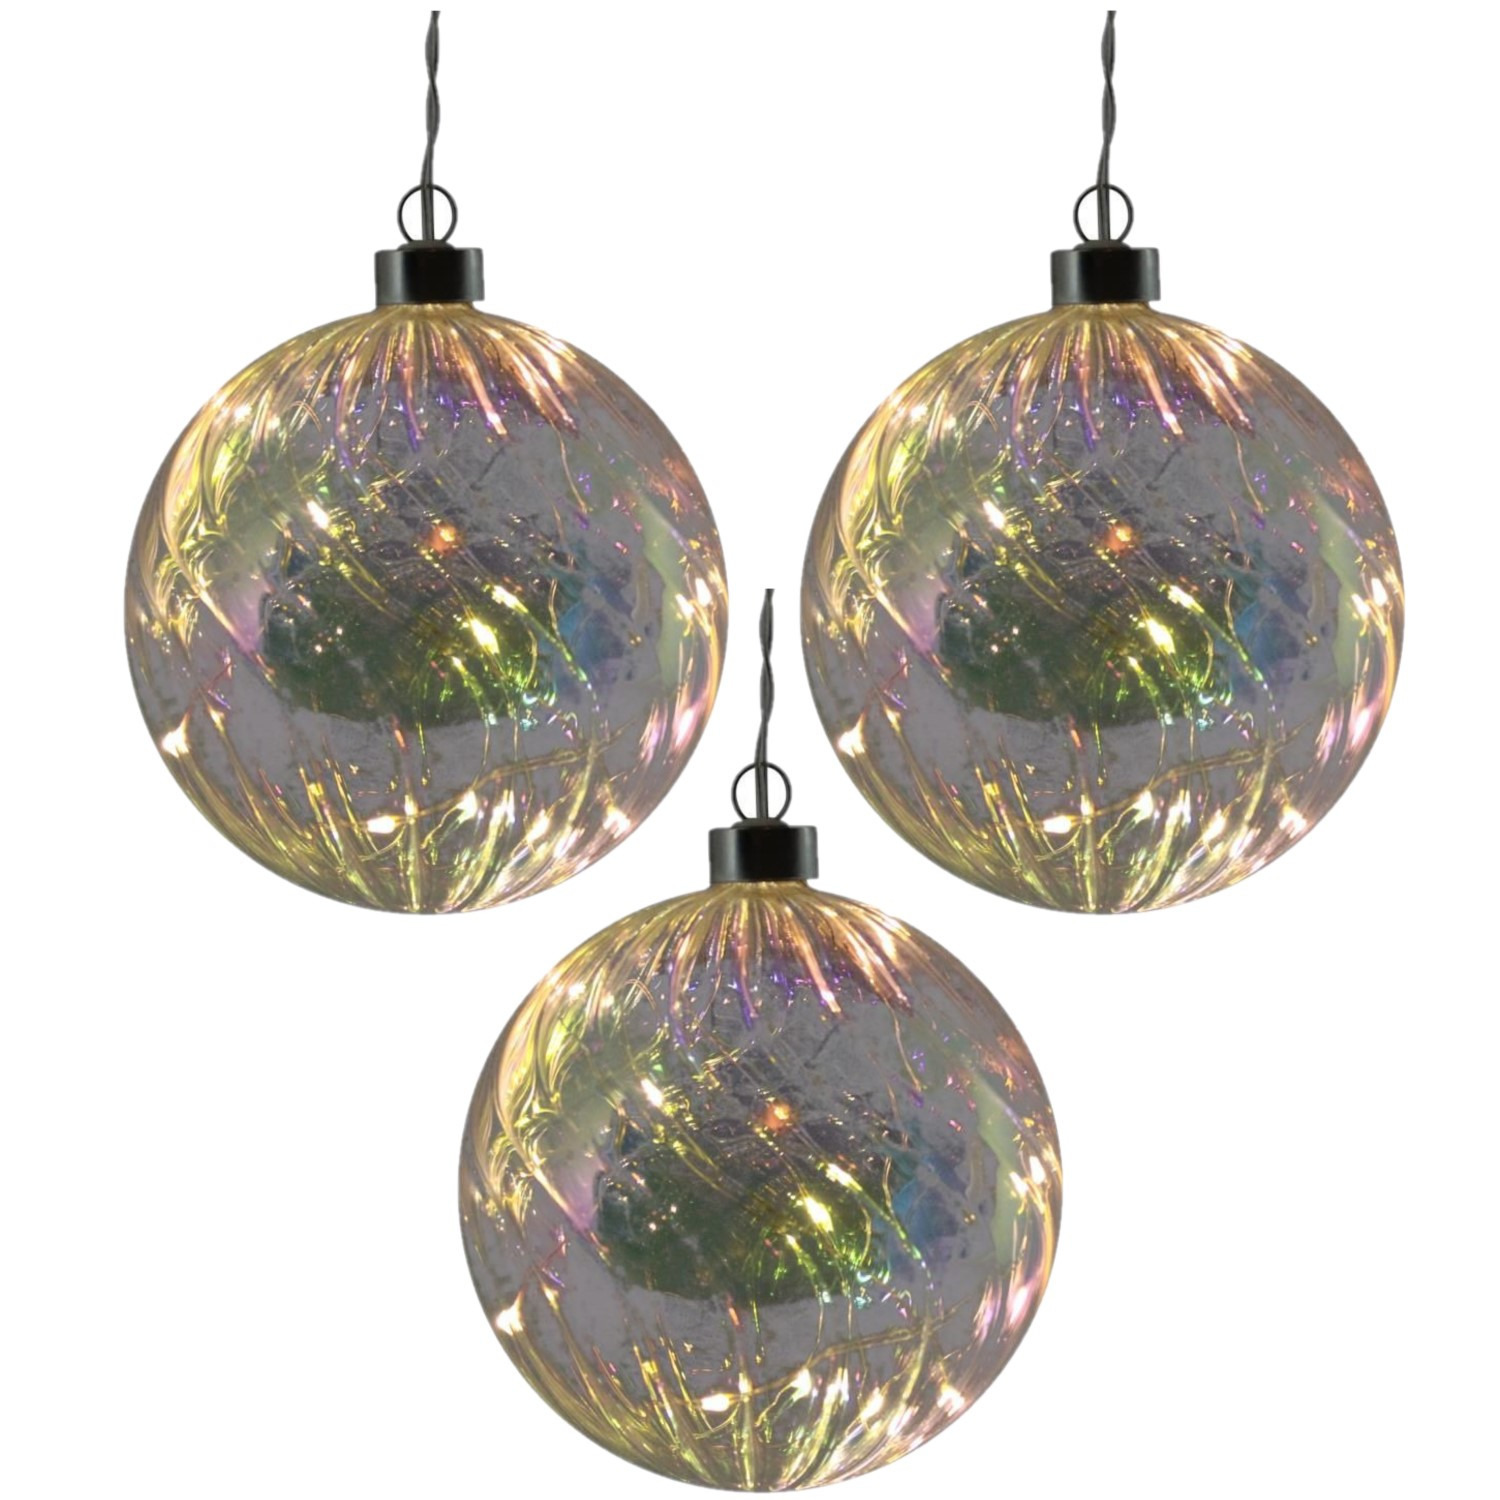 3x stuks verlichte glazen kerstballen met 10 lampjes transparant parelmoer 12 cm